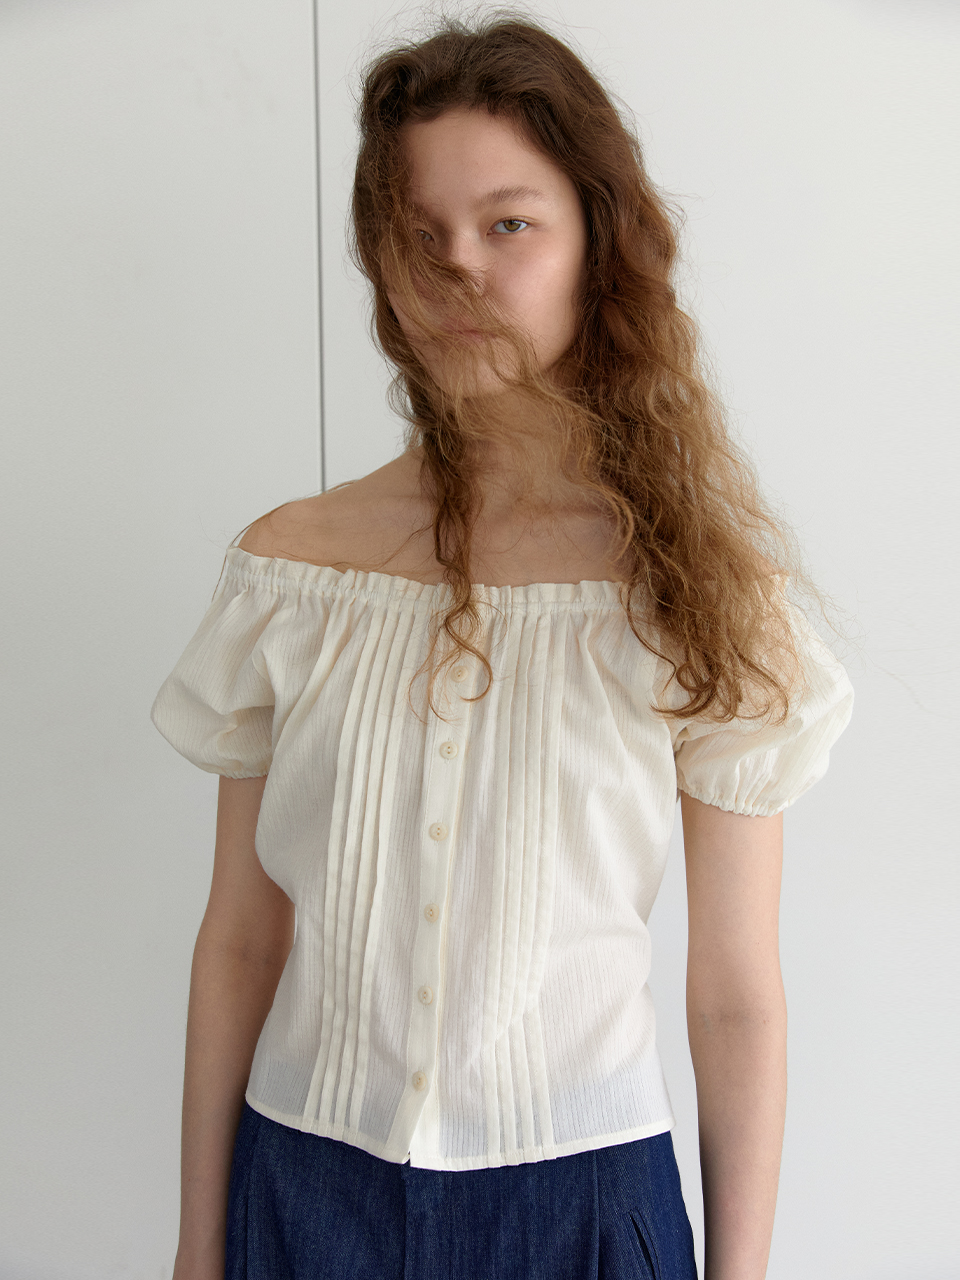 8th / pintuck shoulder blouse - creamBRENDA BRENDEN